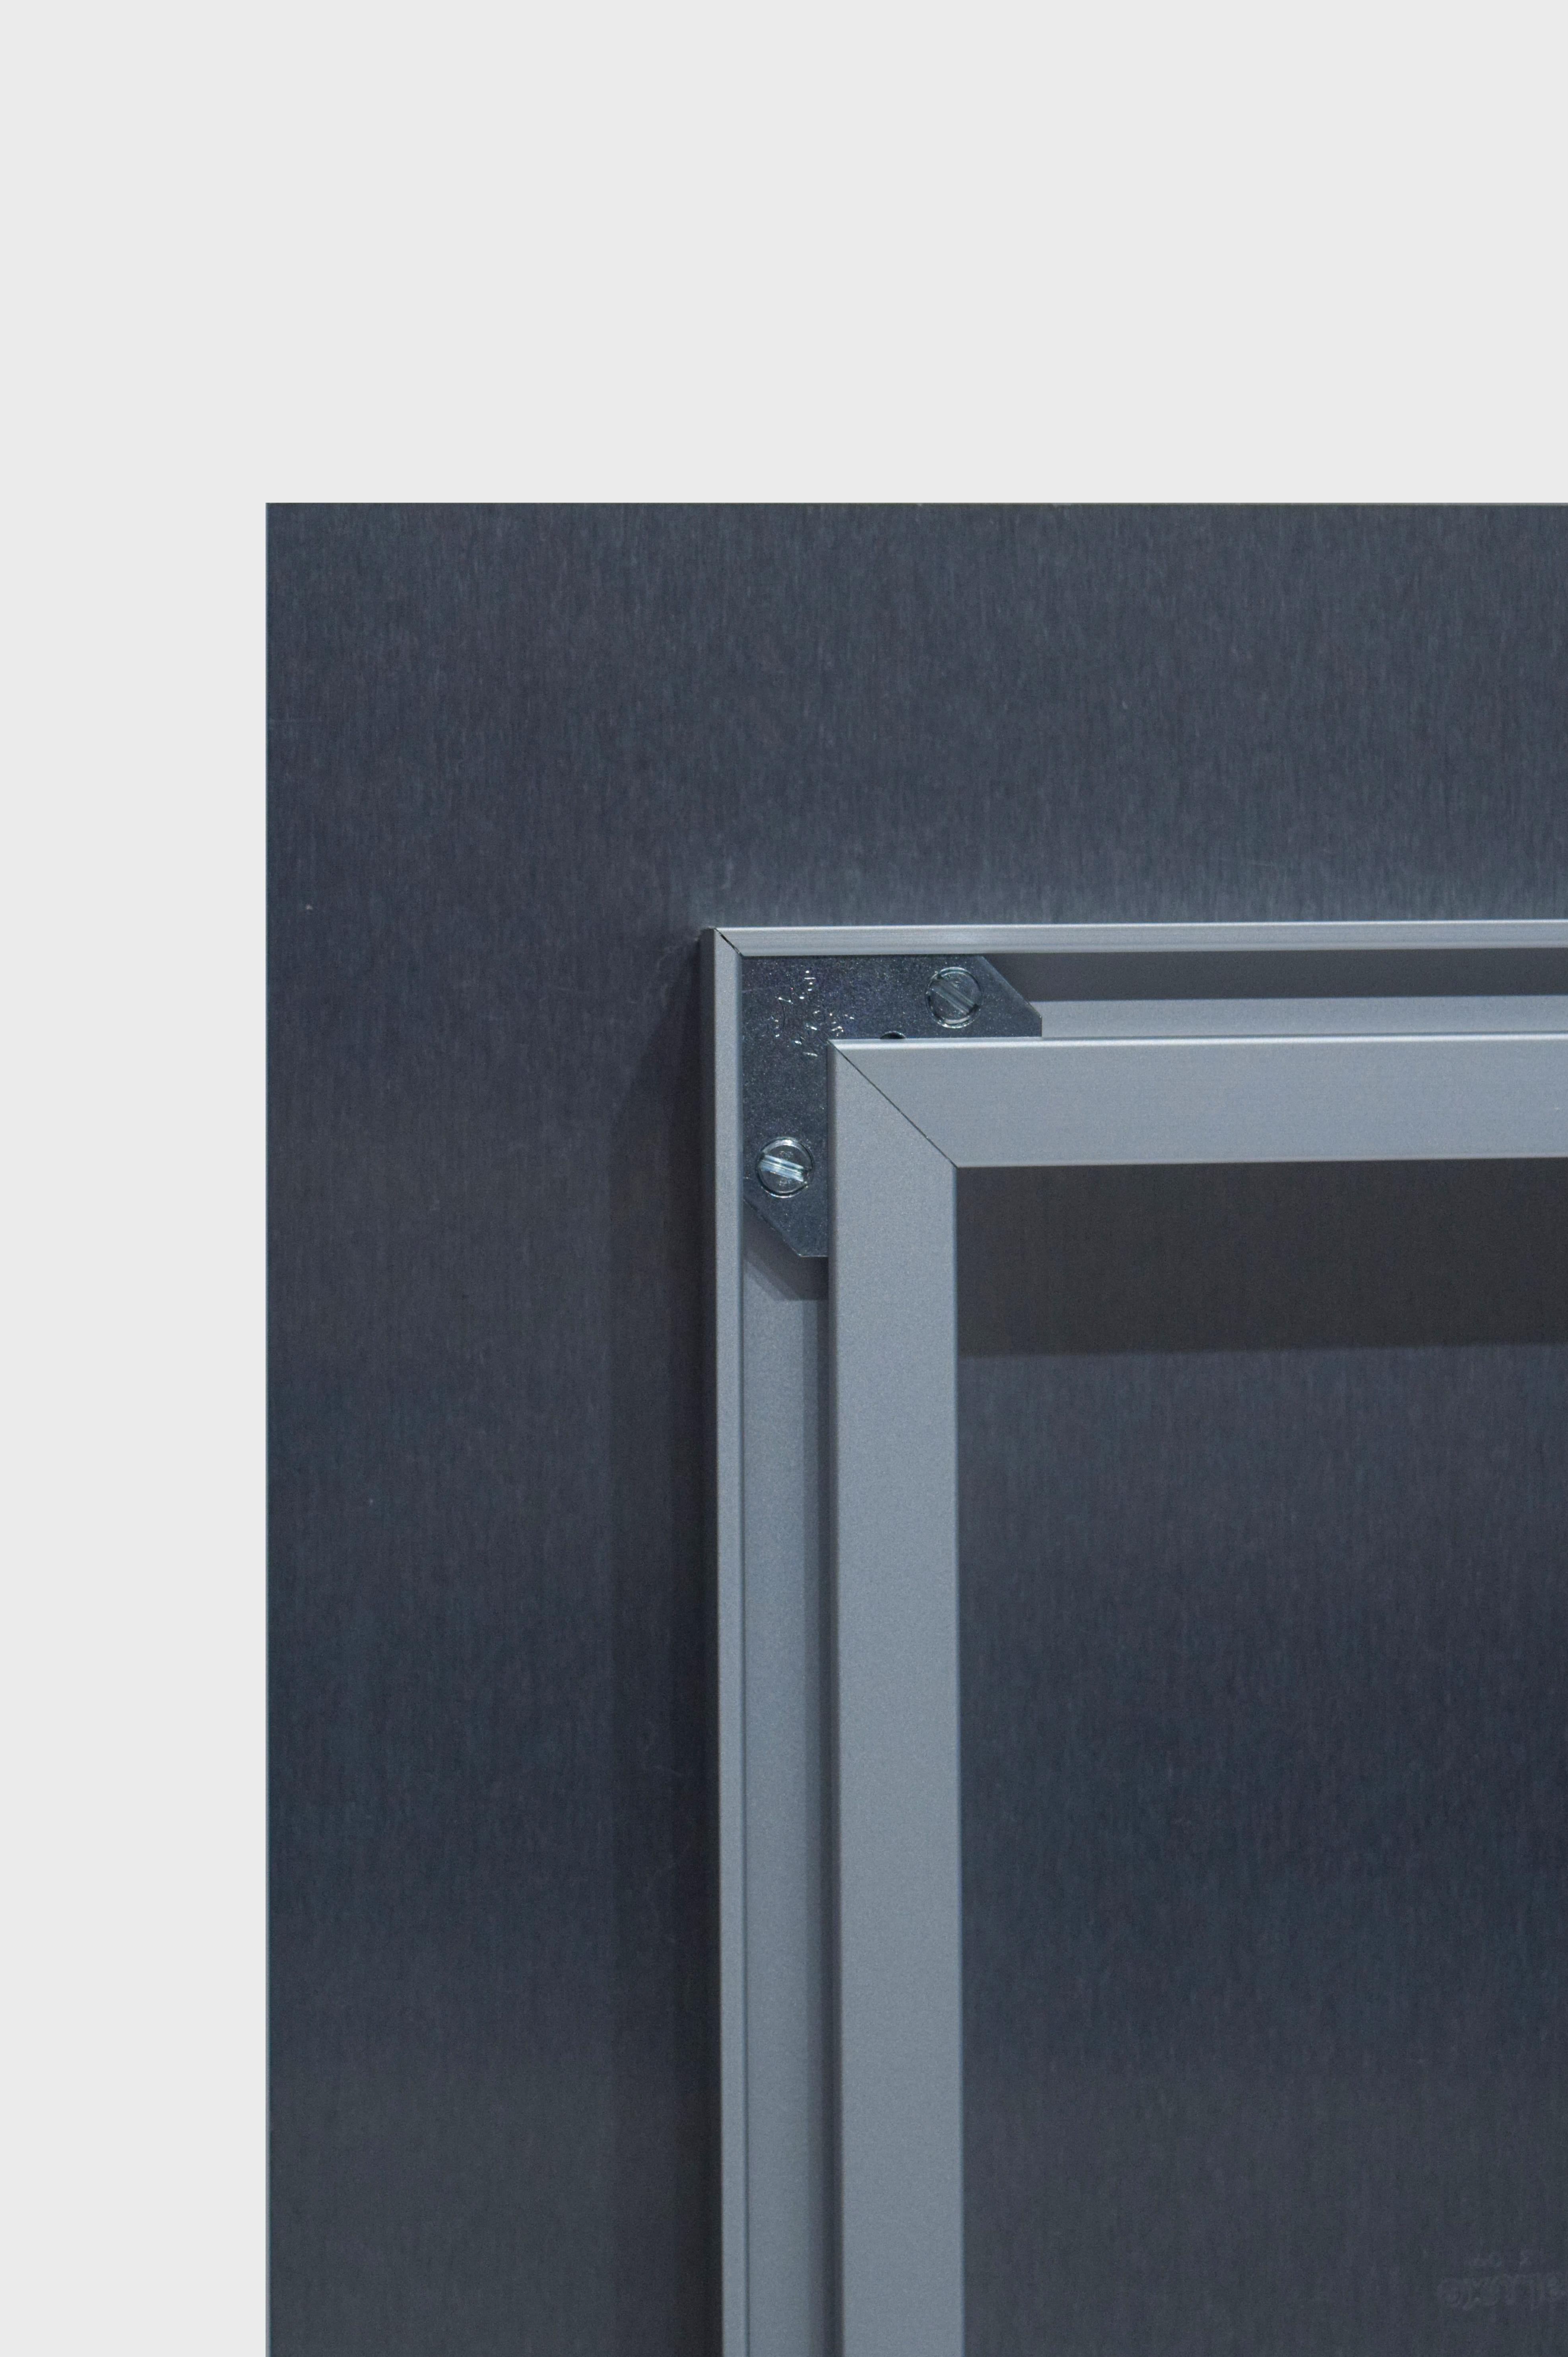 Edition de 50

Les éditions limitées de Françoise Nielly sont disponibles sous forme de tirages pigmentaires sur aluminium : des images haute définition durables et inaltérables avec un effet luminescent doux comme du verre. 

Ils sont disponibles